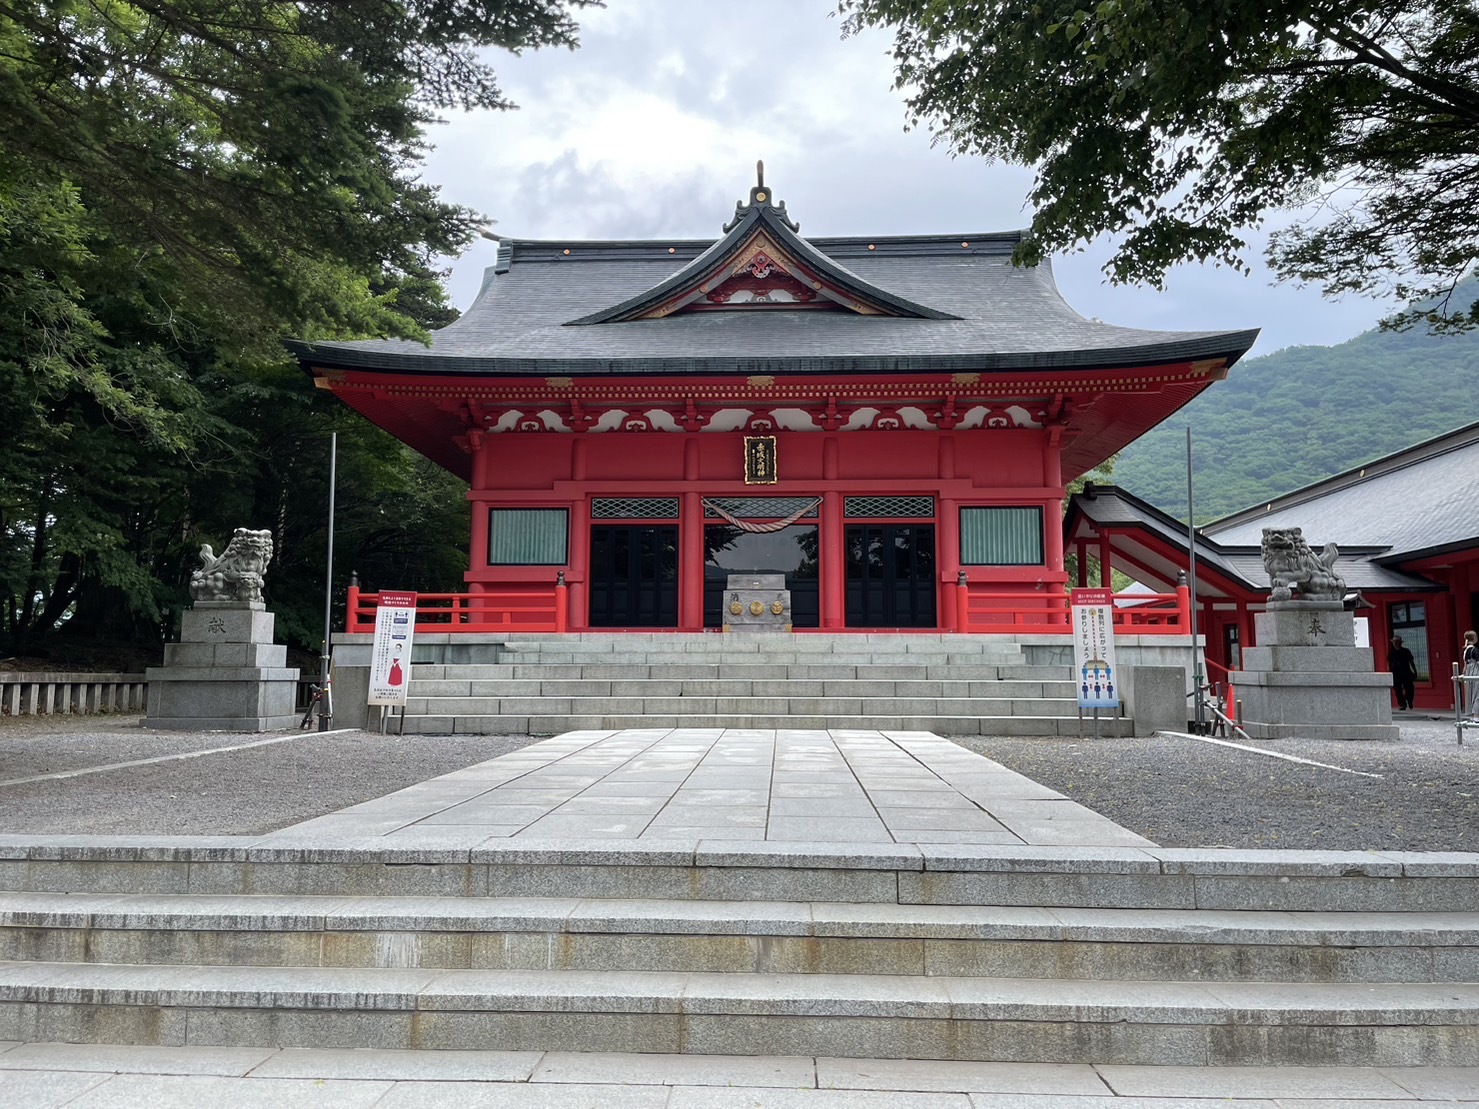 「赤城神社」の本殿